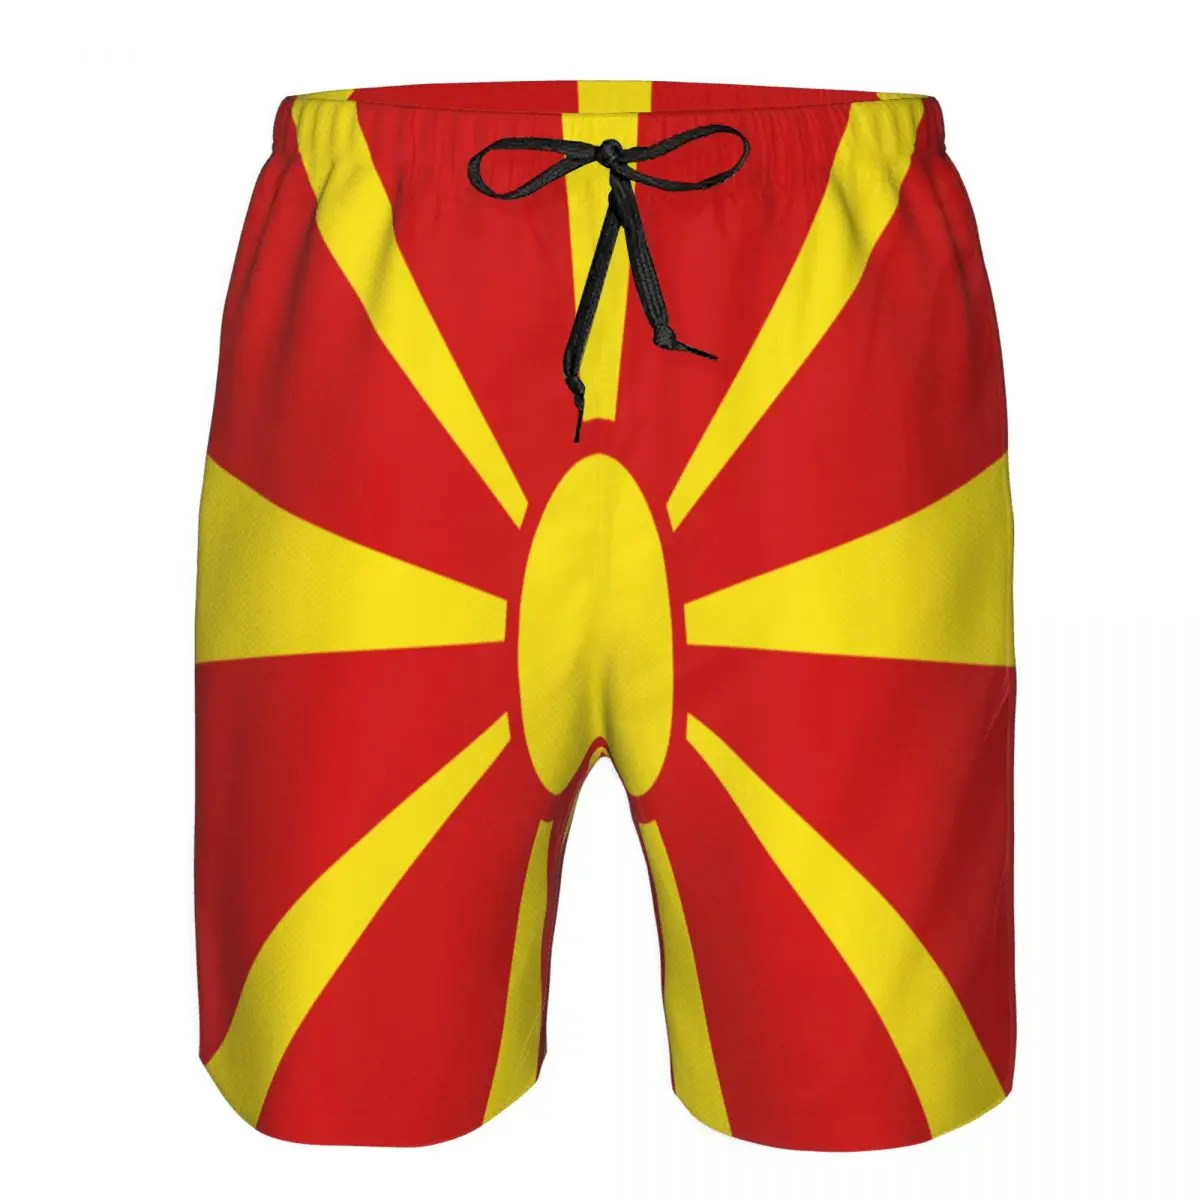 

Летний пляжный купальник, Мужской Быстросохнущий купальник с флагом Северной Македонии, дышащий купальник, пляжные шорты, сексуальный мужской купальник